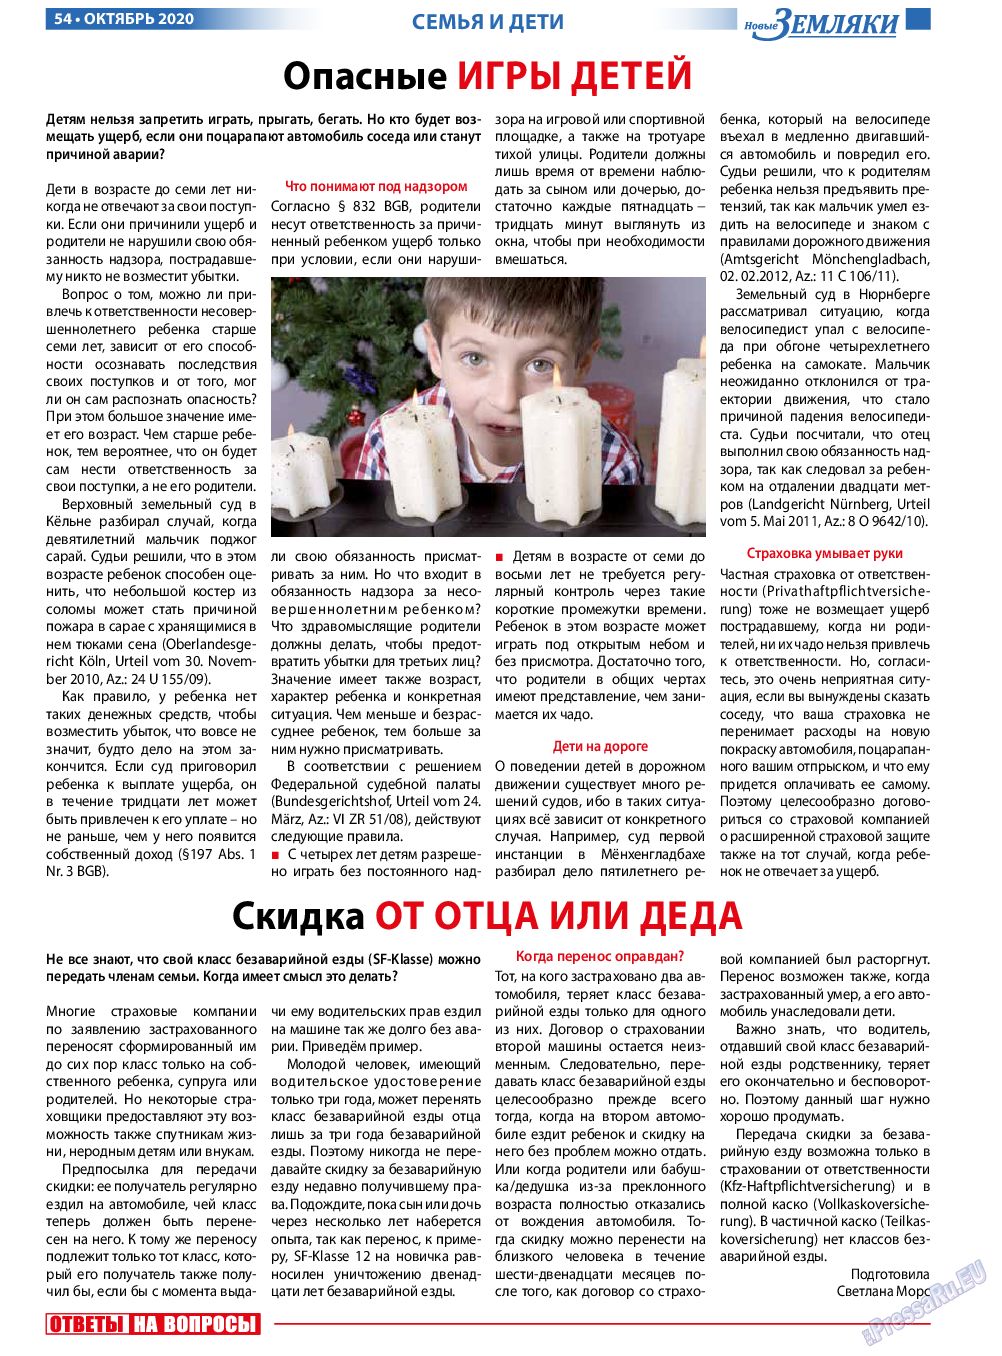 Новые Земляки, газета. 2020 №10 стр.54